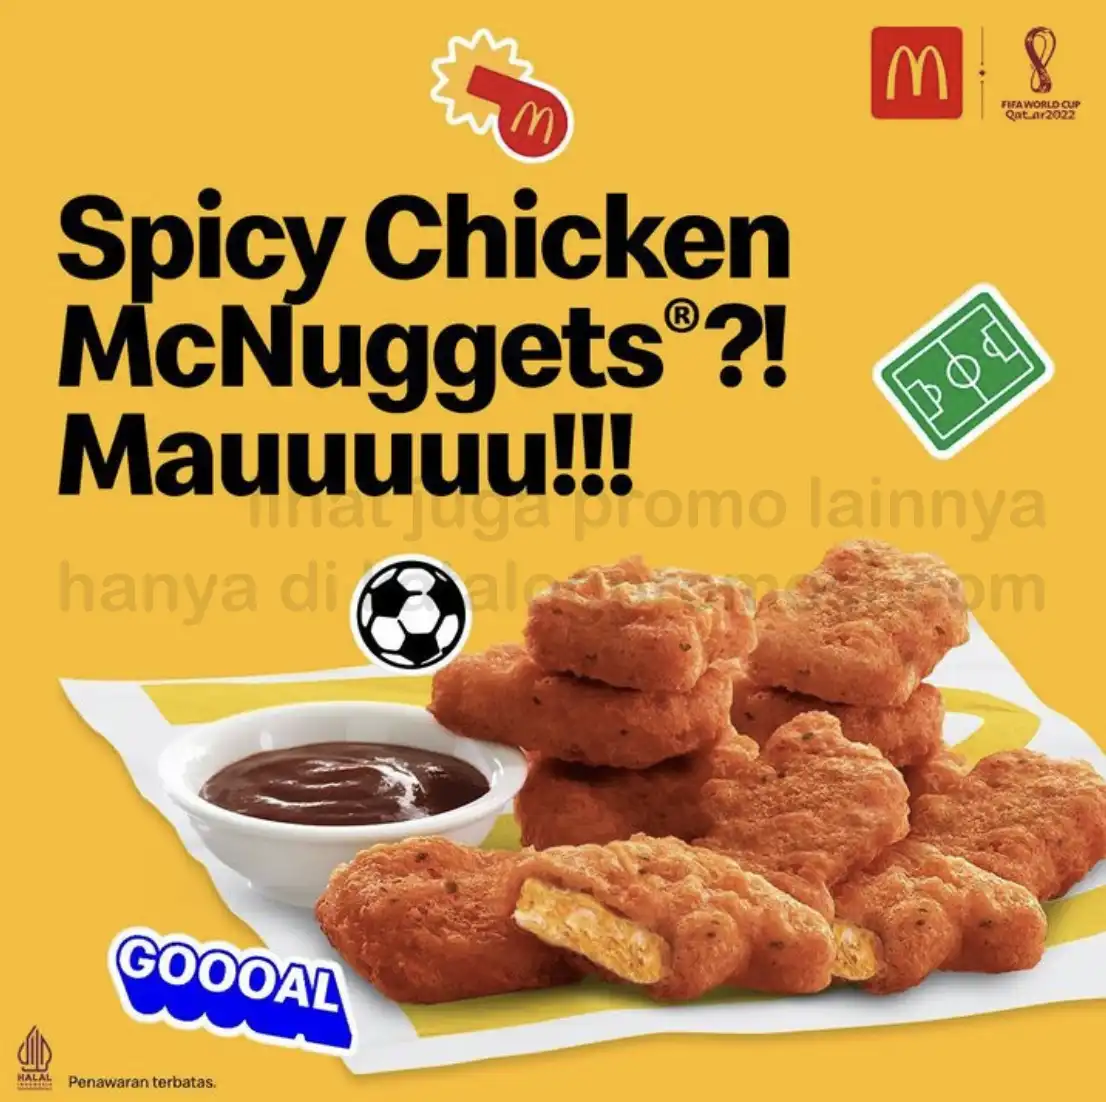 BARU ! McDonalds Spicy Chicken McNuggets 